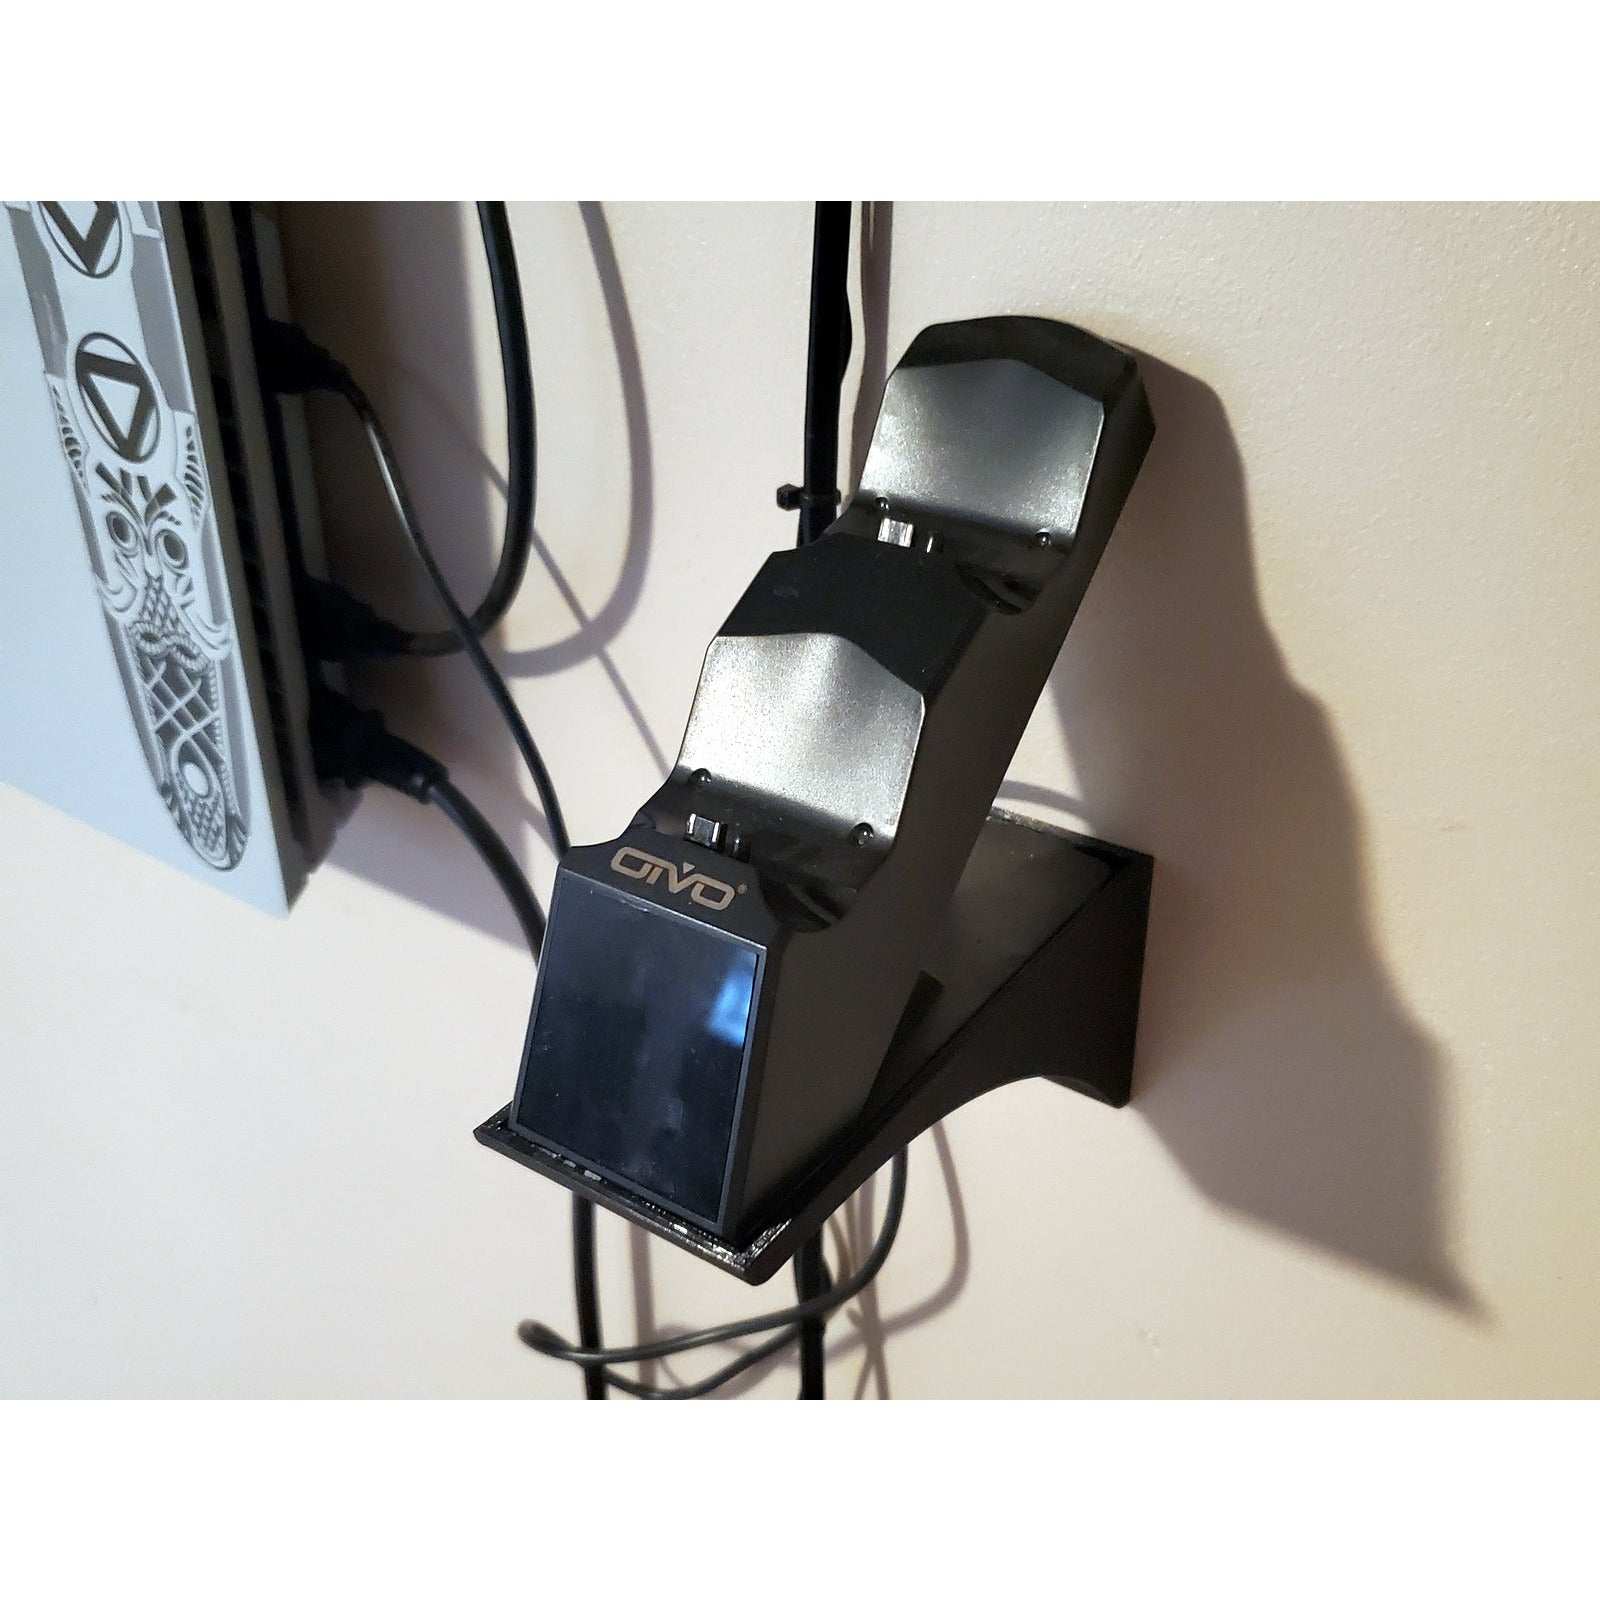 PS4 Controller Wall Mount – FishOfHex Aquatics